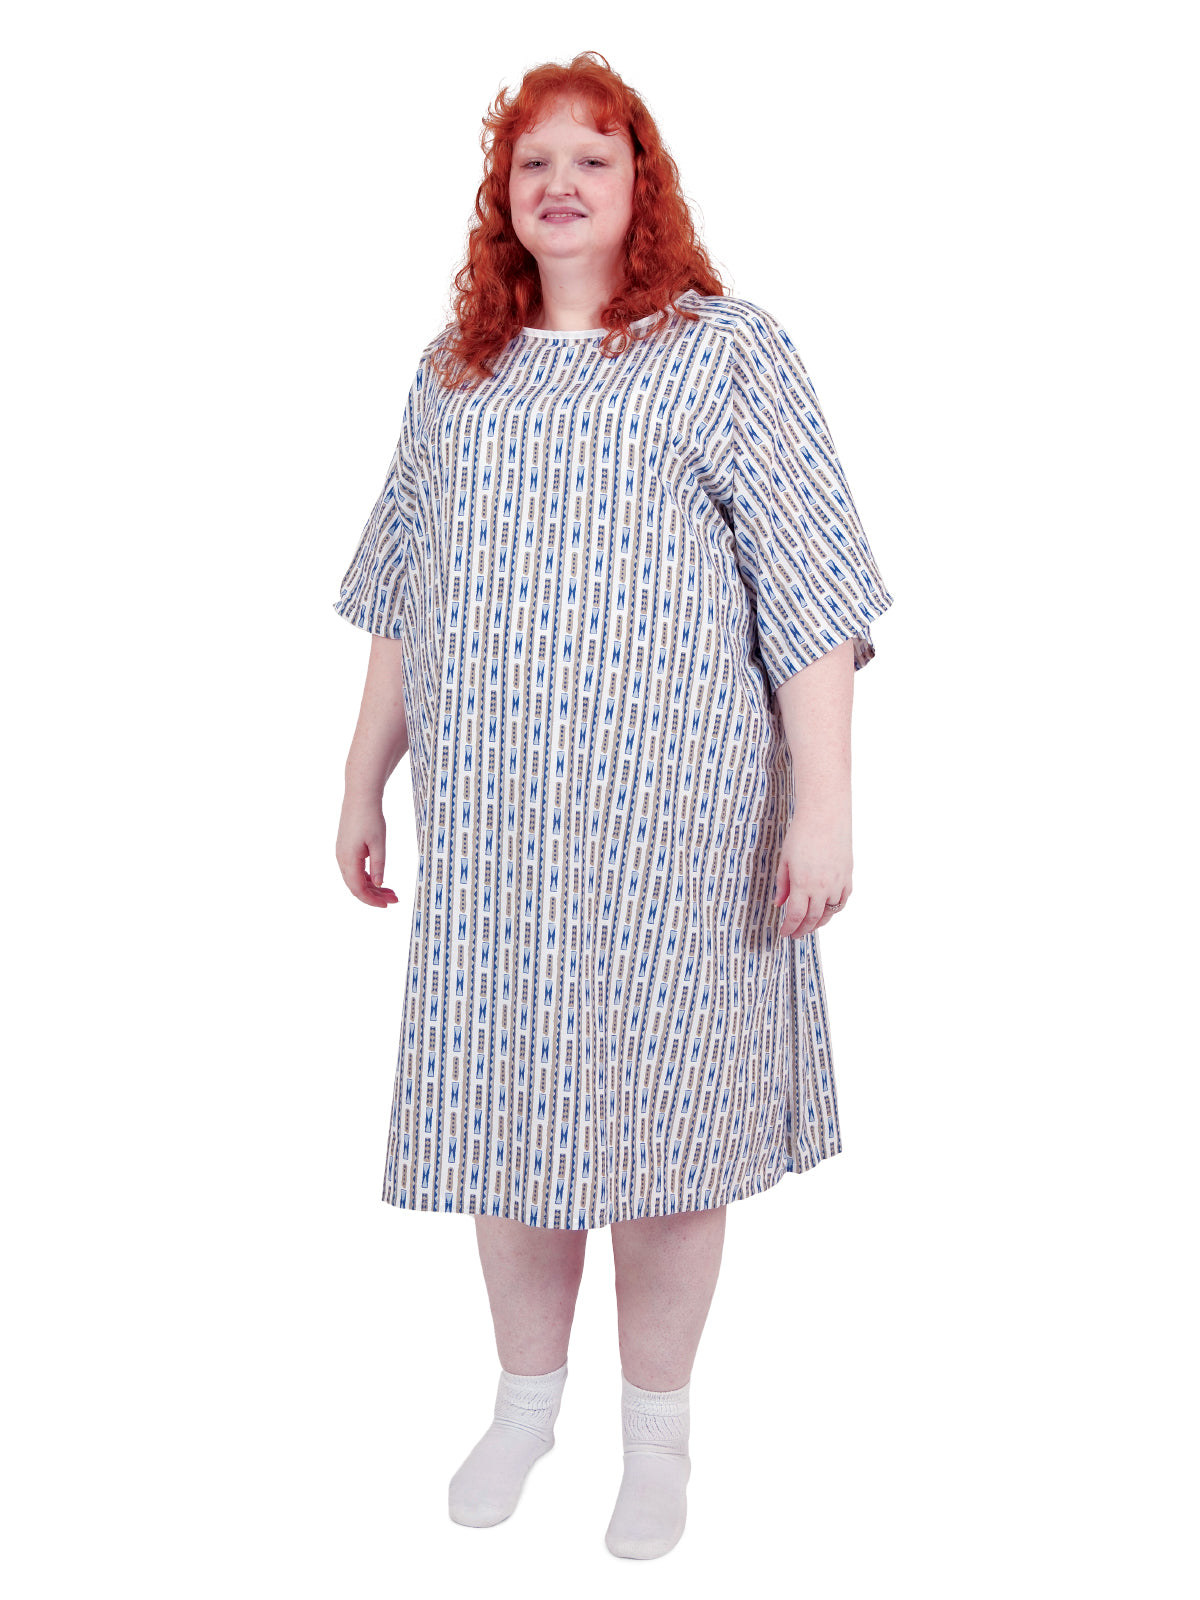 Unisex Patient Gown - 45261 - Aztec Print